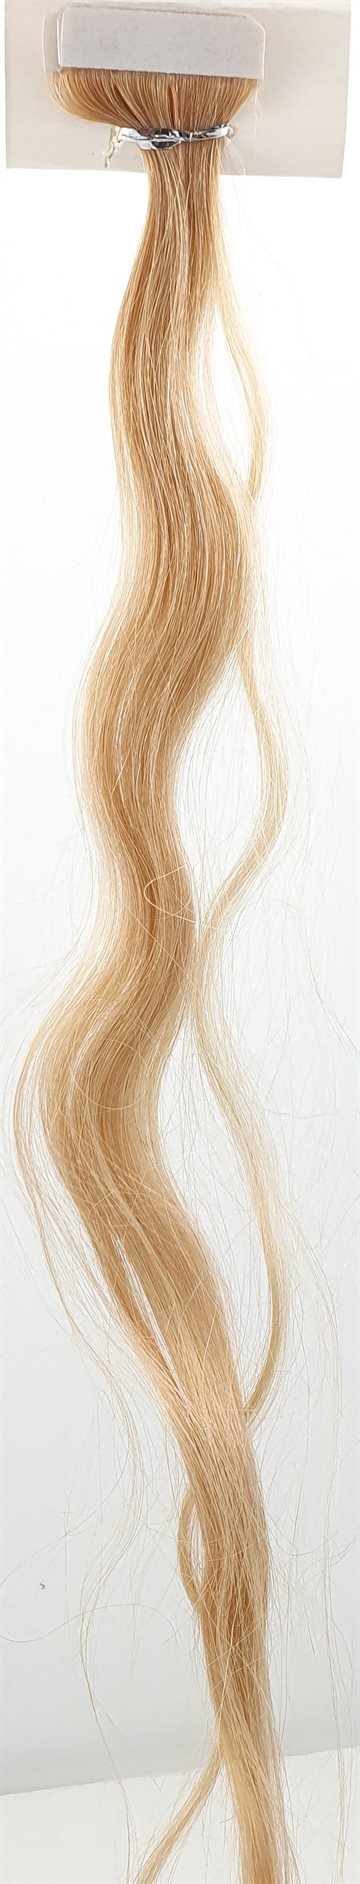 Human Hair - Skin Weft hair, color 27 - 18" (45 cm. length.)